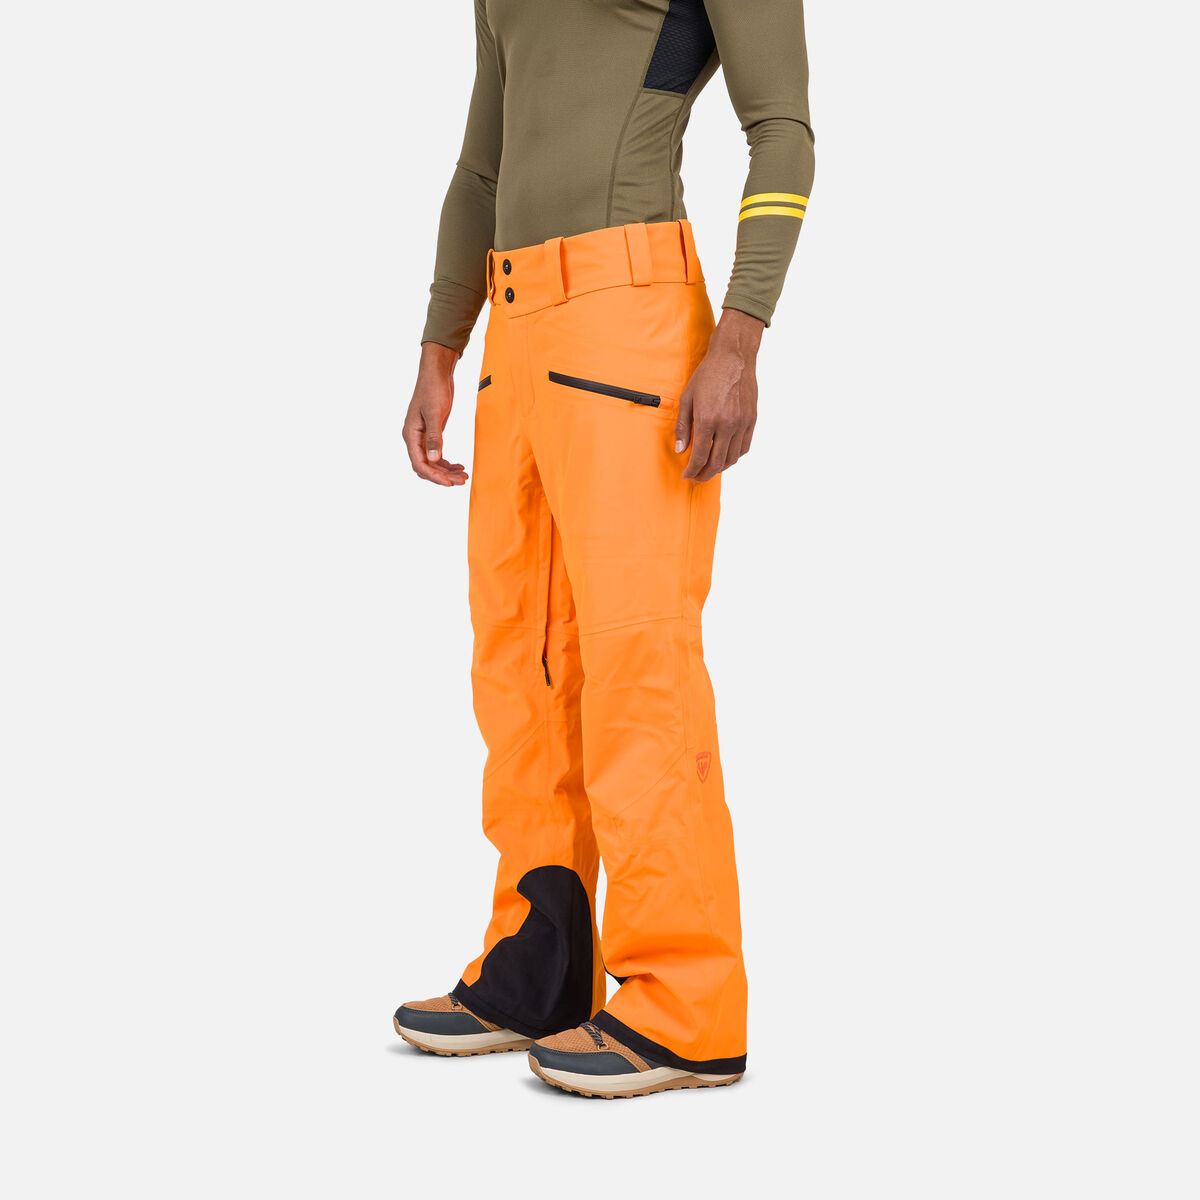 Rossignol Pantalon de ski Evader homme Orange